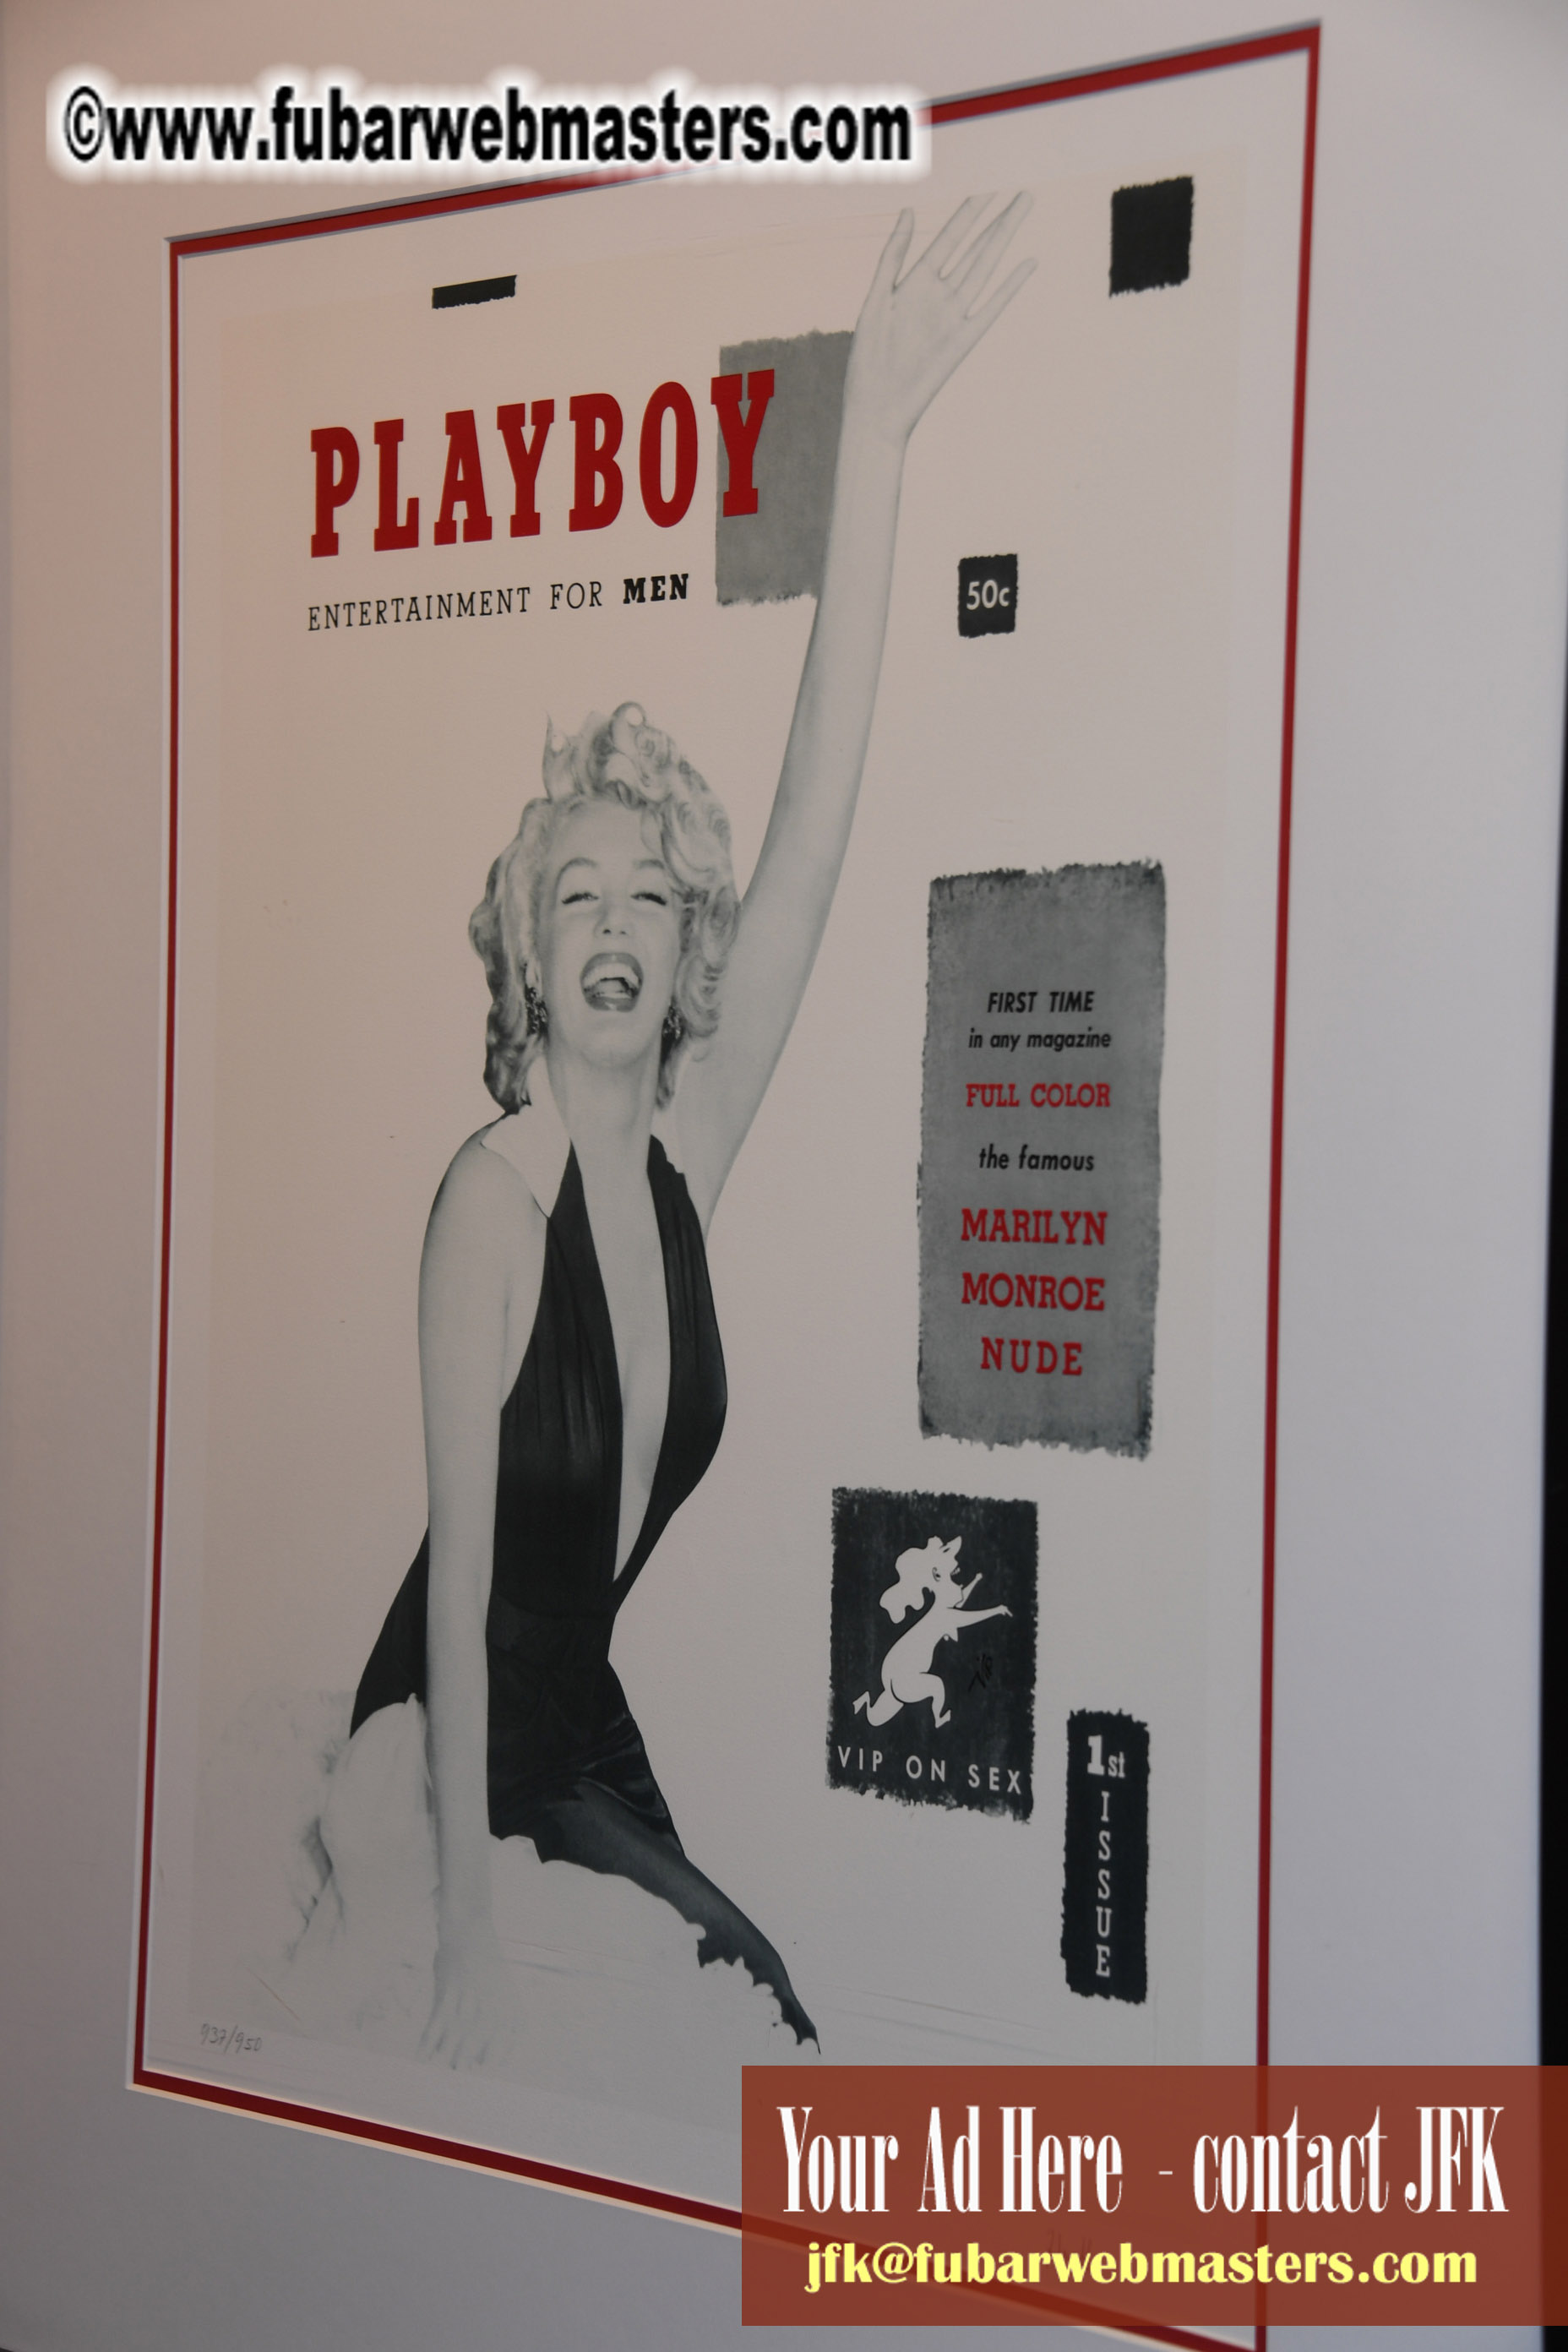 Playboy Mixer